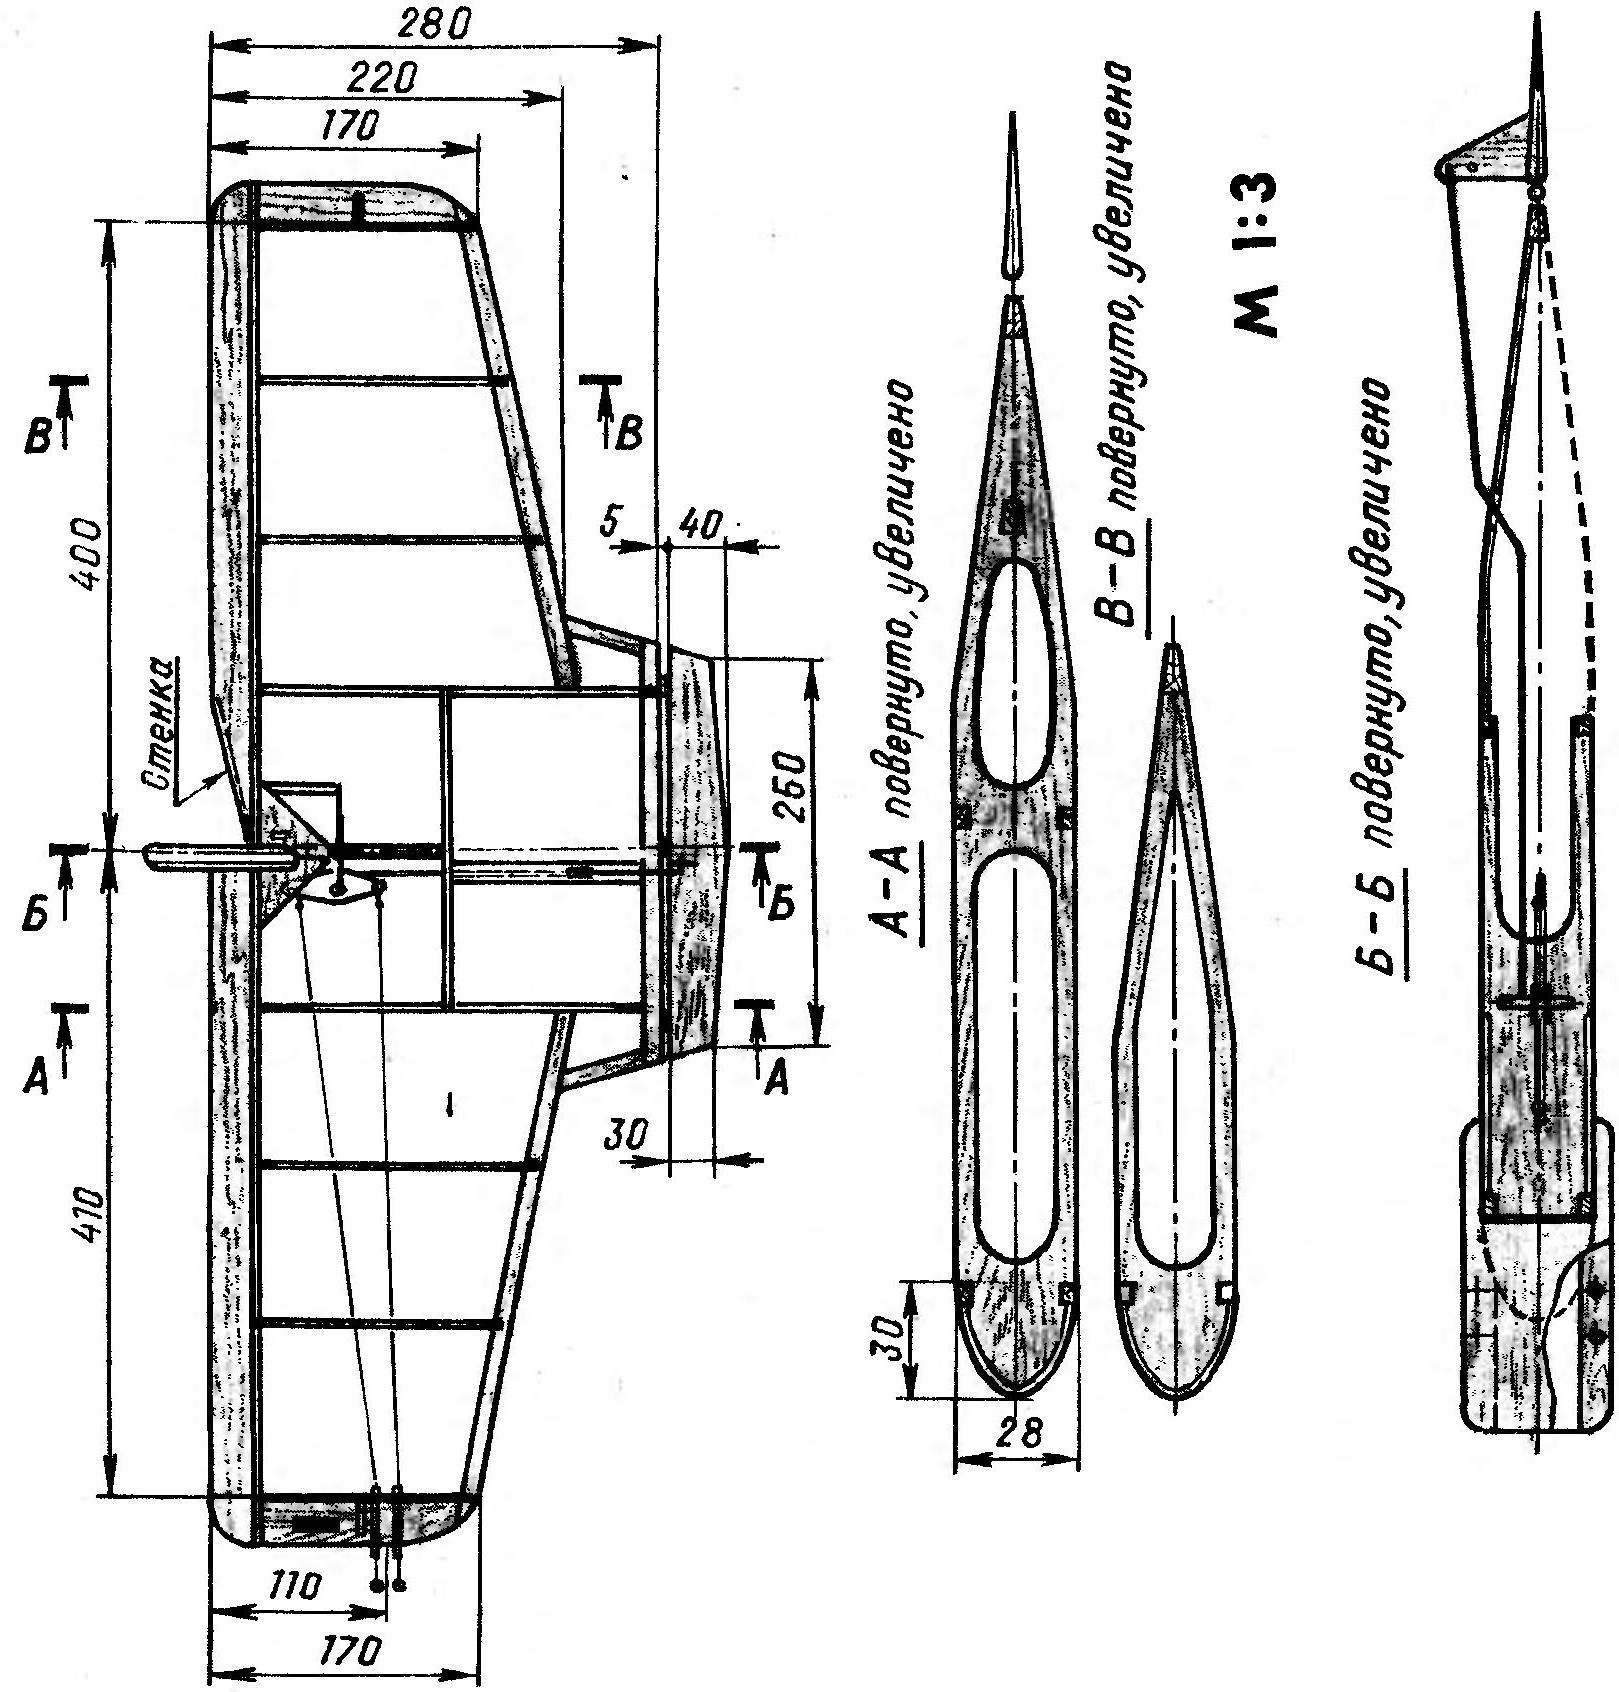  Р и с. 1. Модель «воздушного боя» под микродвигатель рабочим объемом 1,5 см3